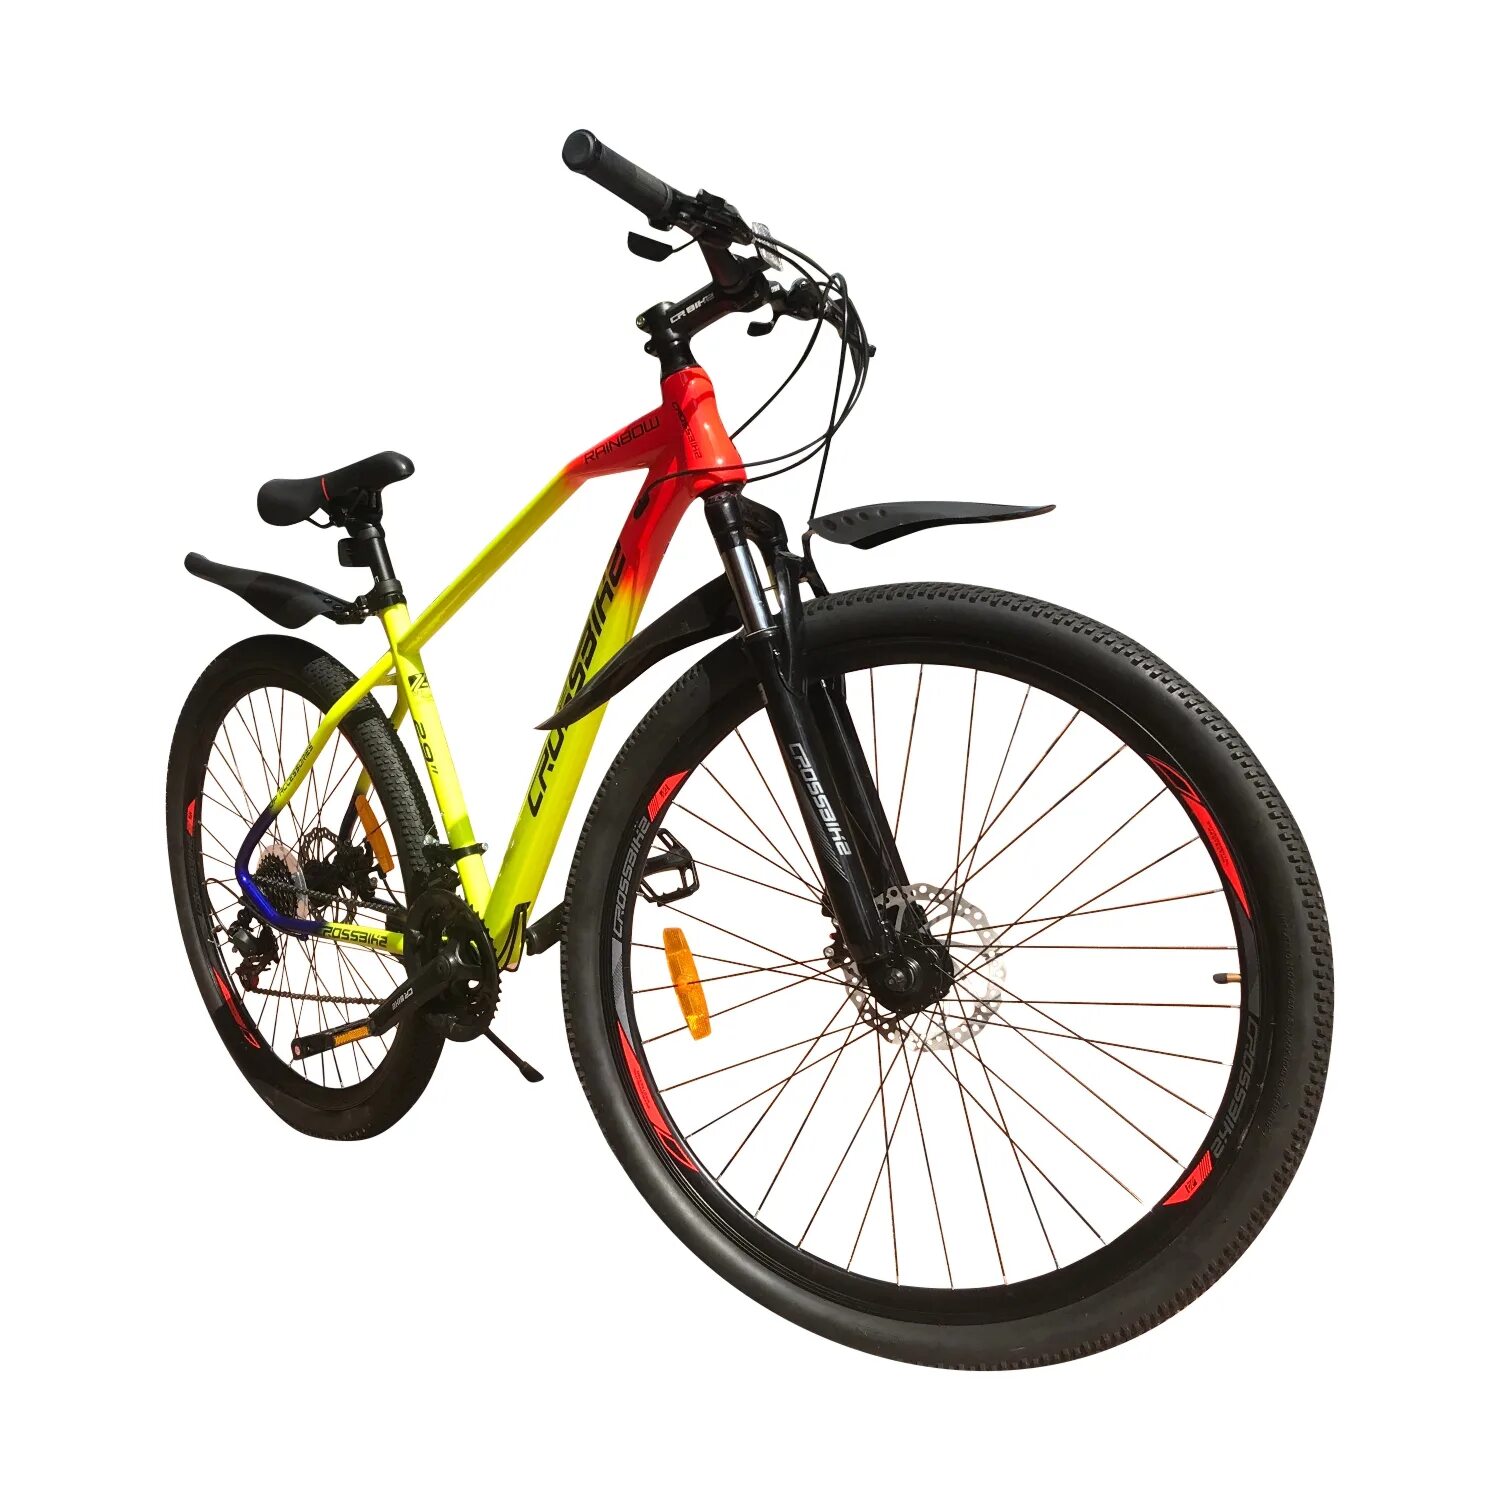 Какой фирмы купить велосипед. Велосипед Crossbike Rainbow 29" красный-желтый-син. Велосипед Cross Bike Rainbow 29. Crossbike велосипед 26" Crossbike. Велосипед Crossbike Alpina 26 d.